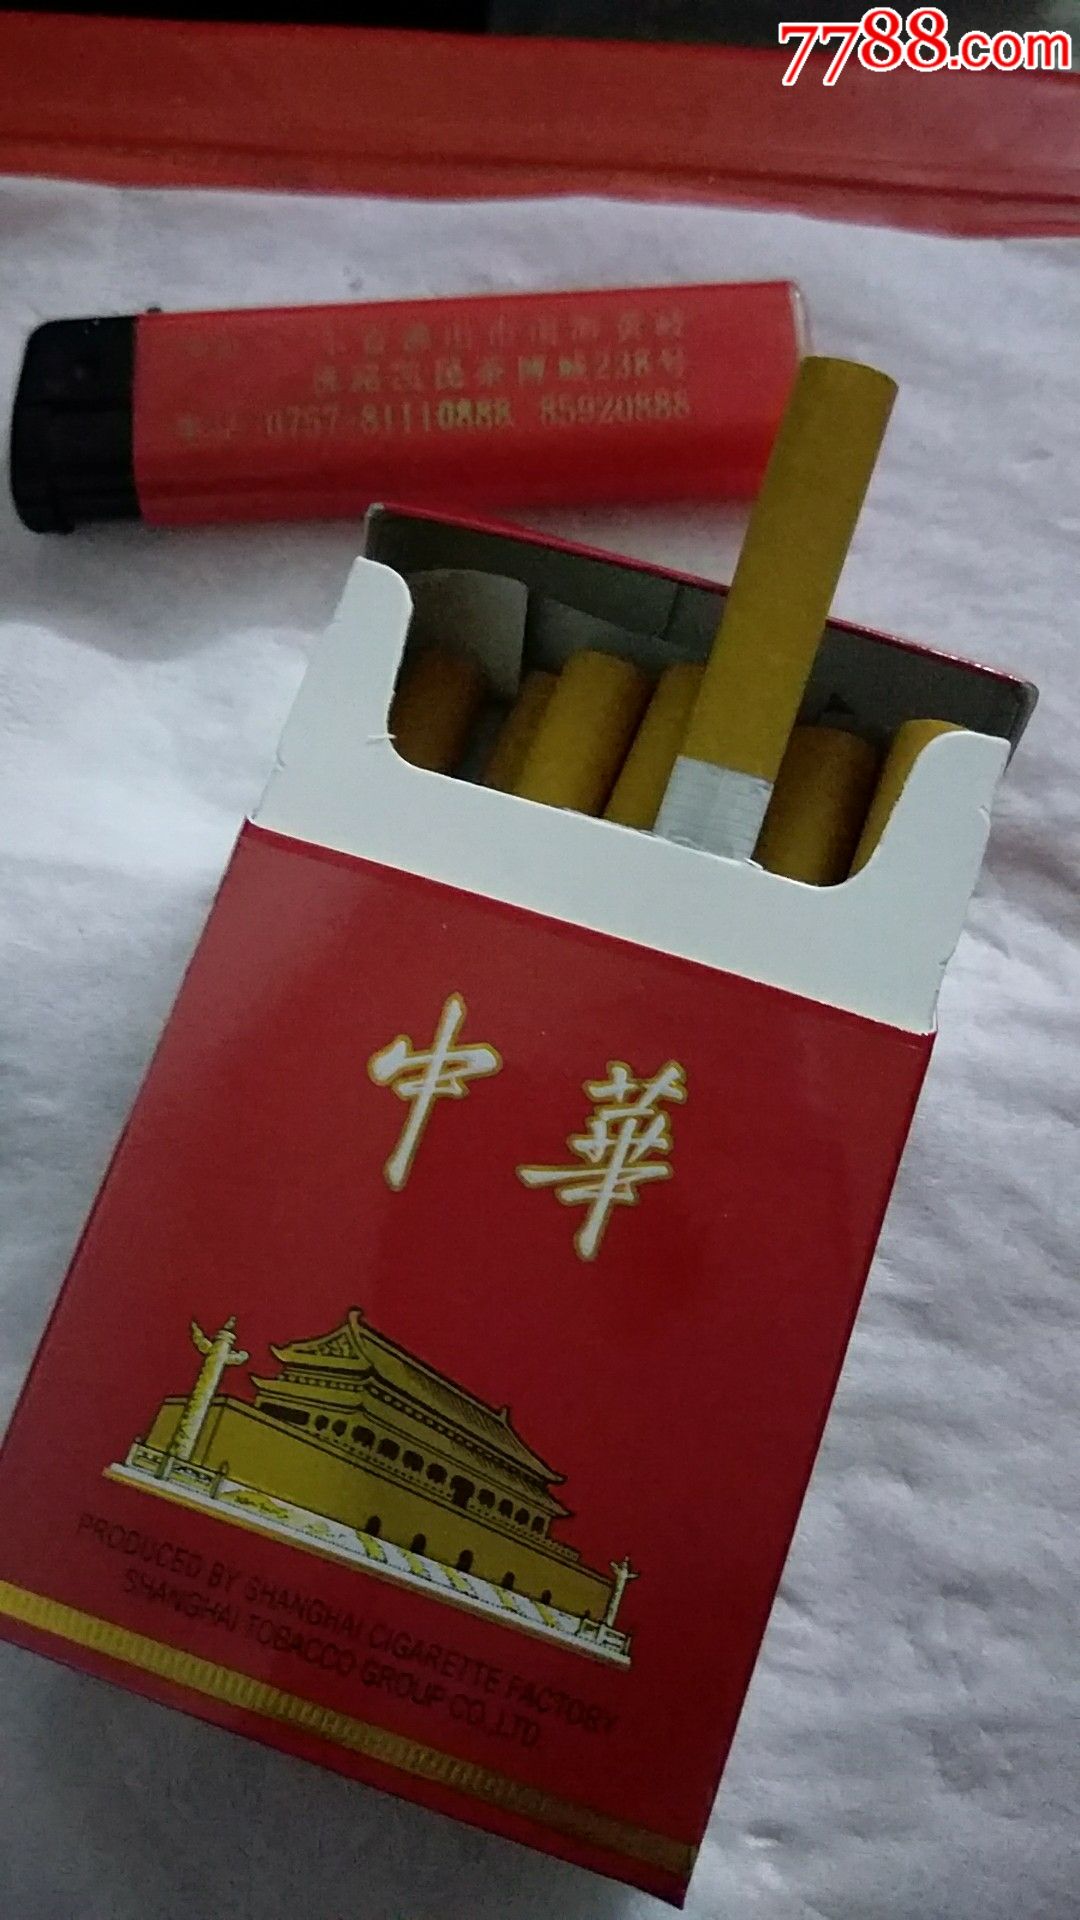 中华香烟,两包合卖